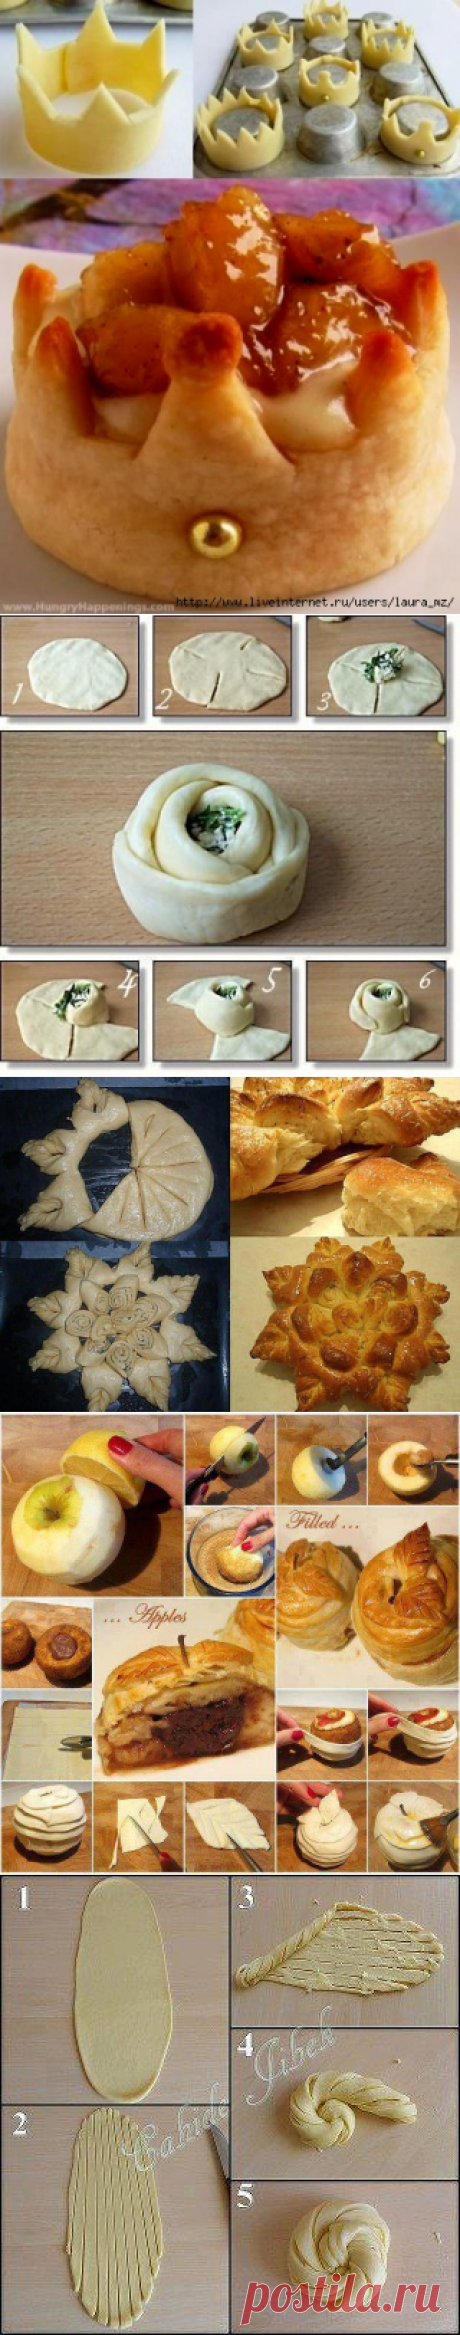 Разделка теста : способы формирования пирогов, пирожков и булочек | Четыре вкуса